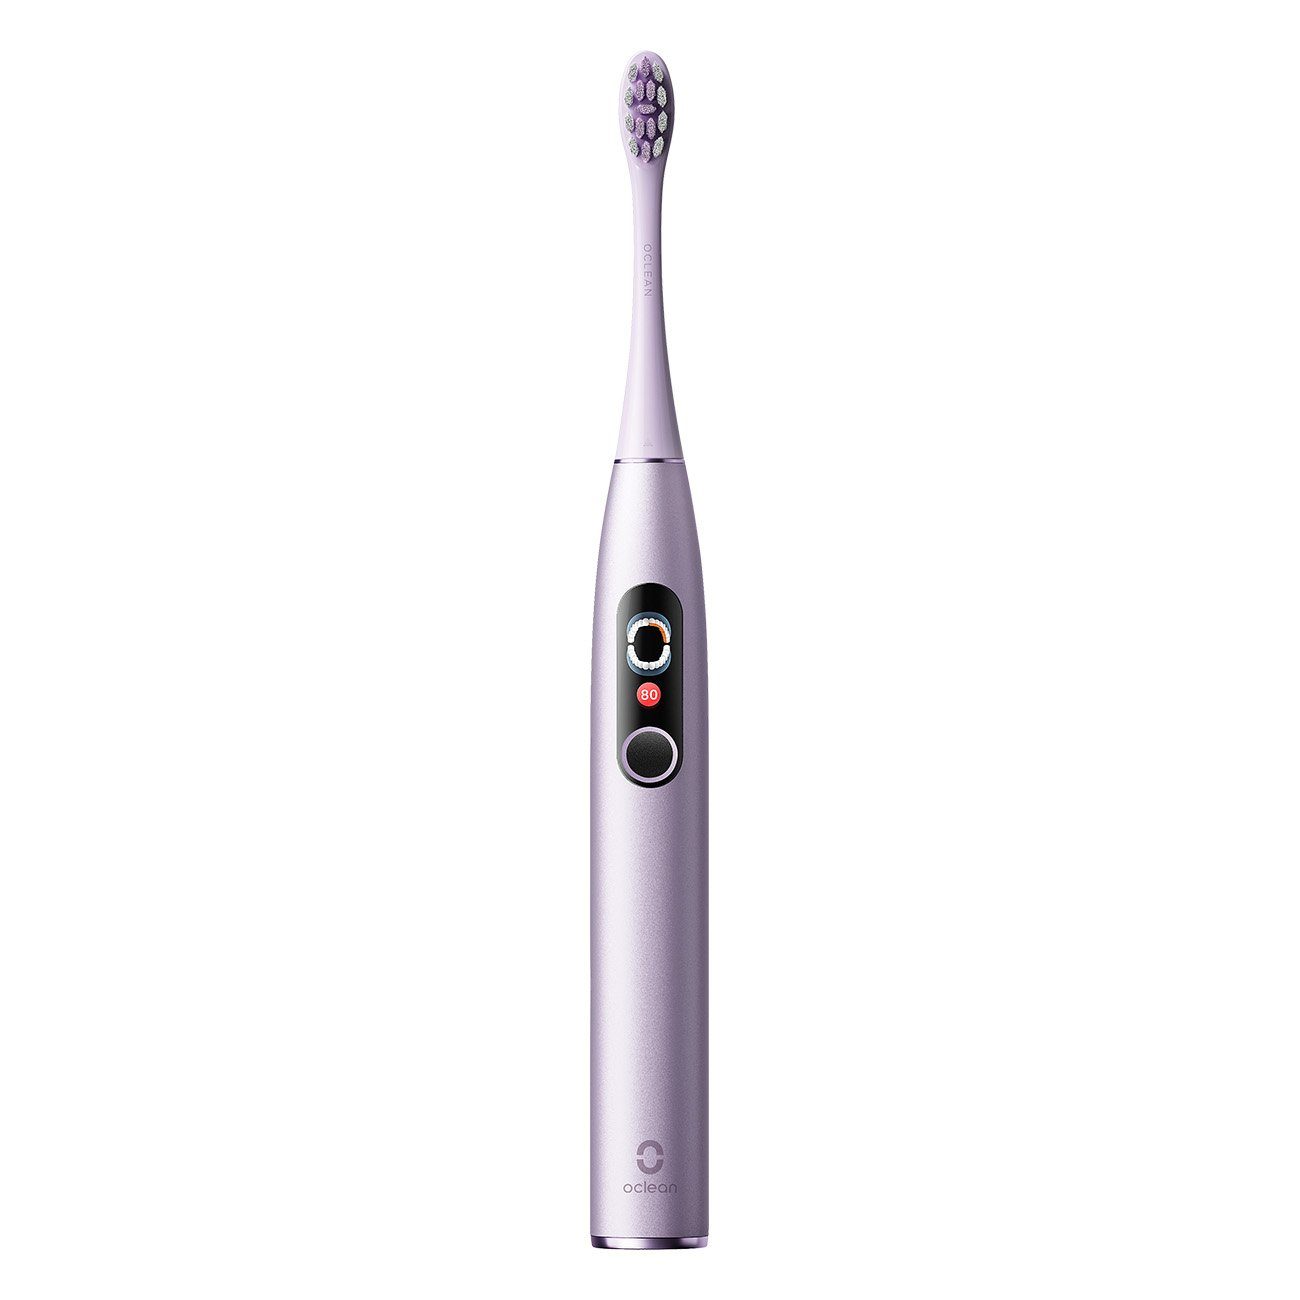 Oclean Elektrische Zahnbürste Electric Toothbrush X Pro Digital